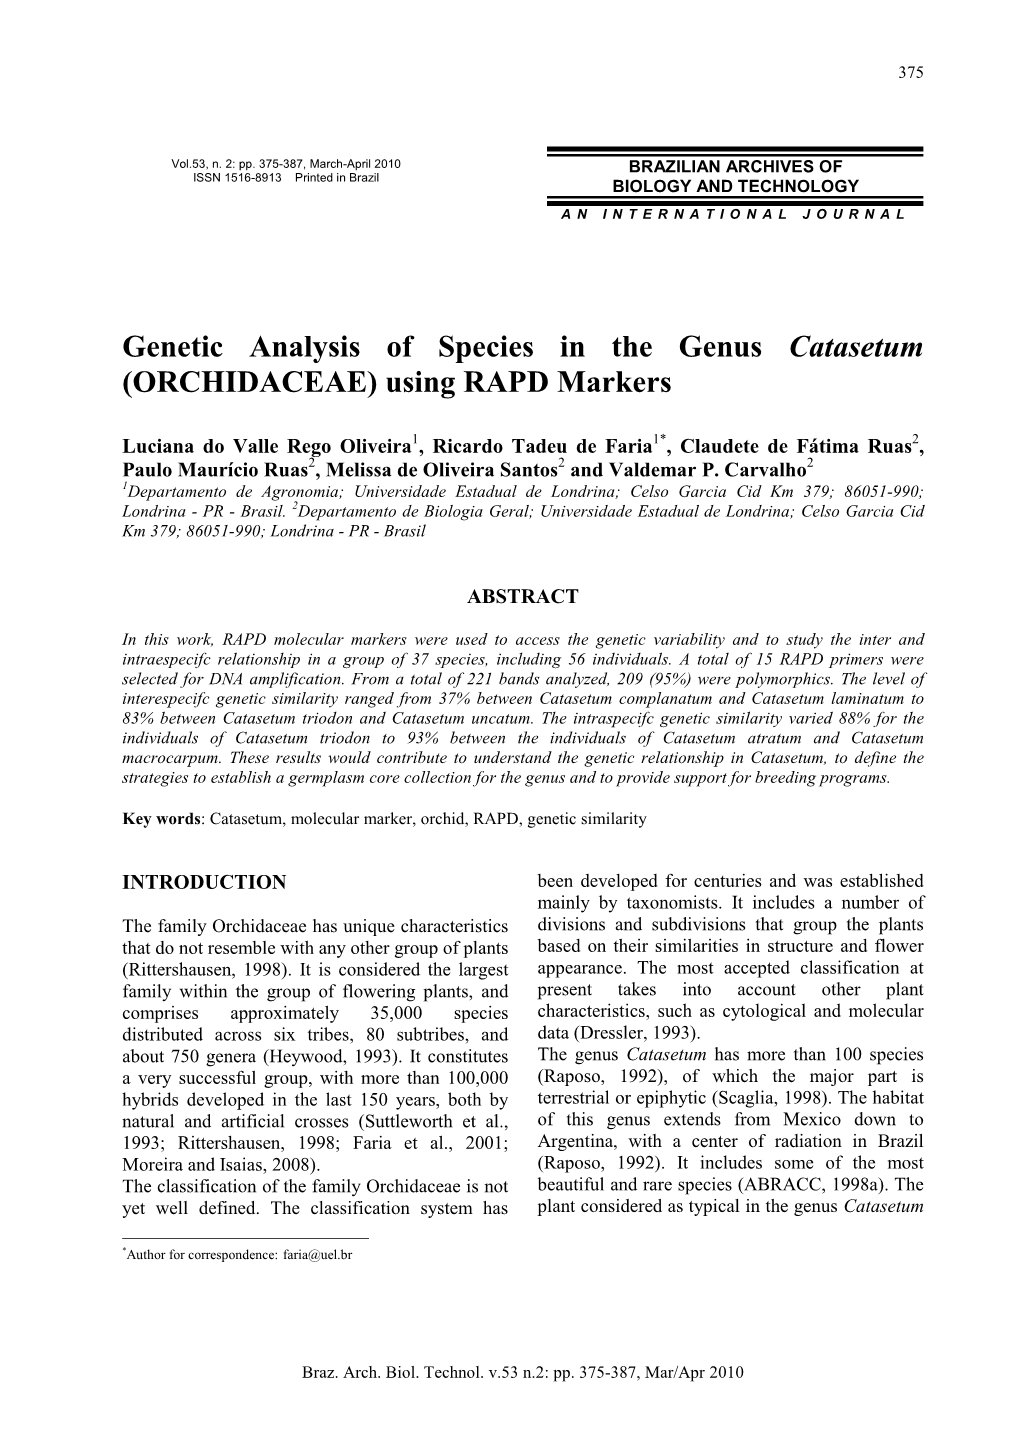 Genetic Analysis of Species in the Genus Catasetum (ORCHIDACEAE) Using RAPD Markers